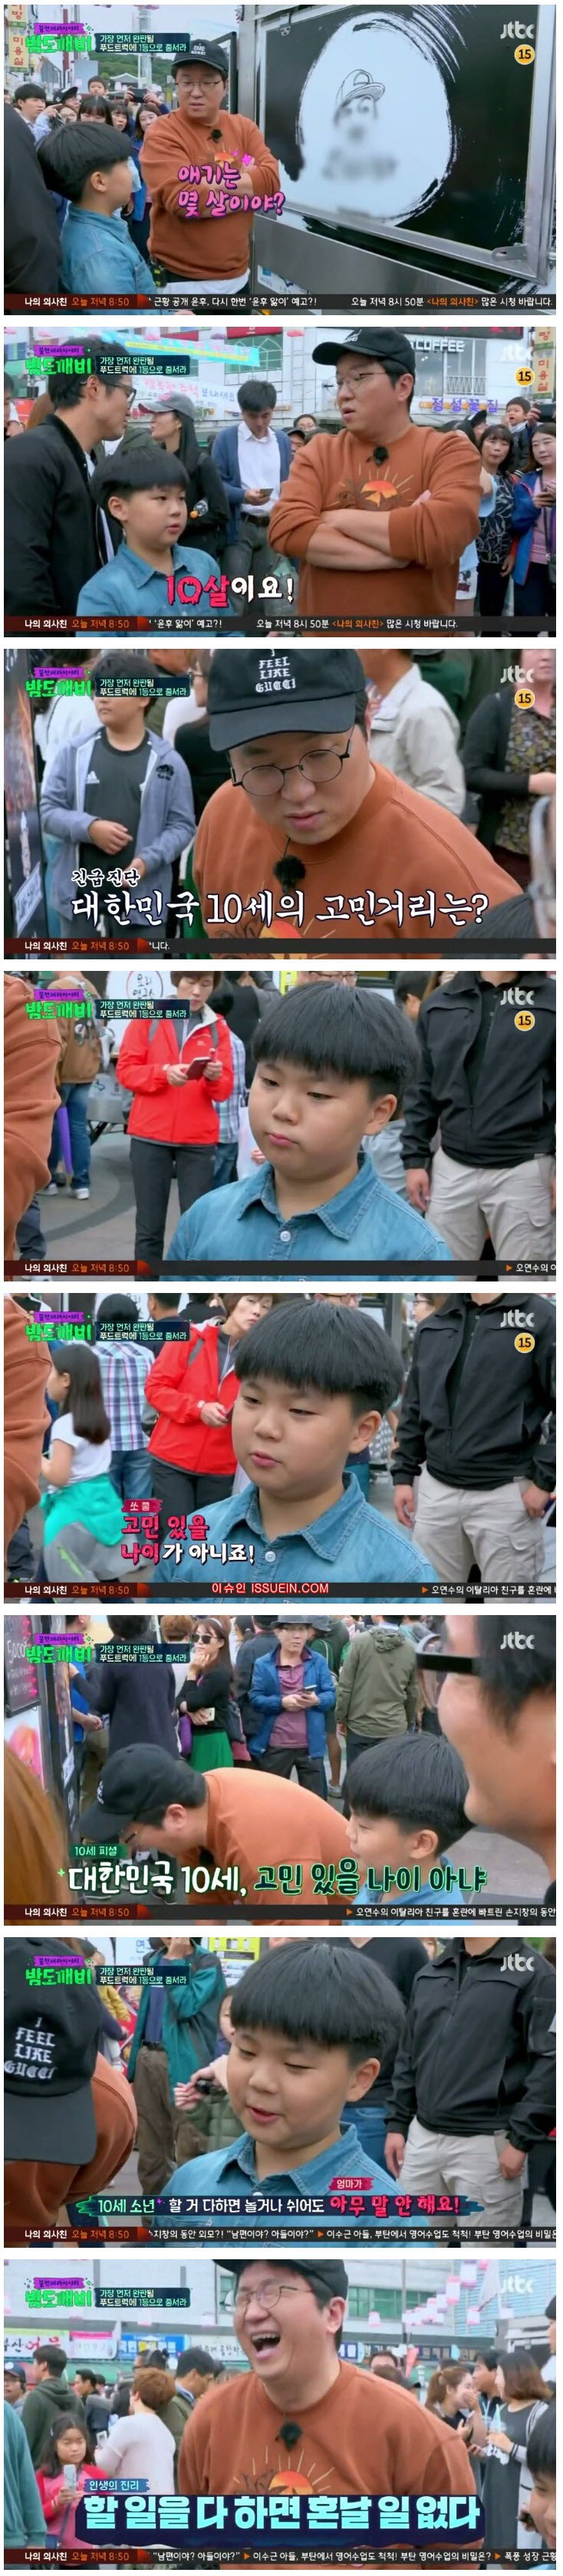 대한민국 10살 어린이의 고민-1.jpg